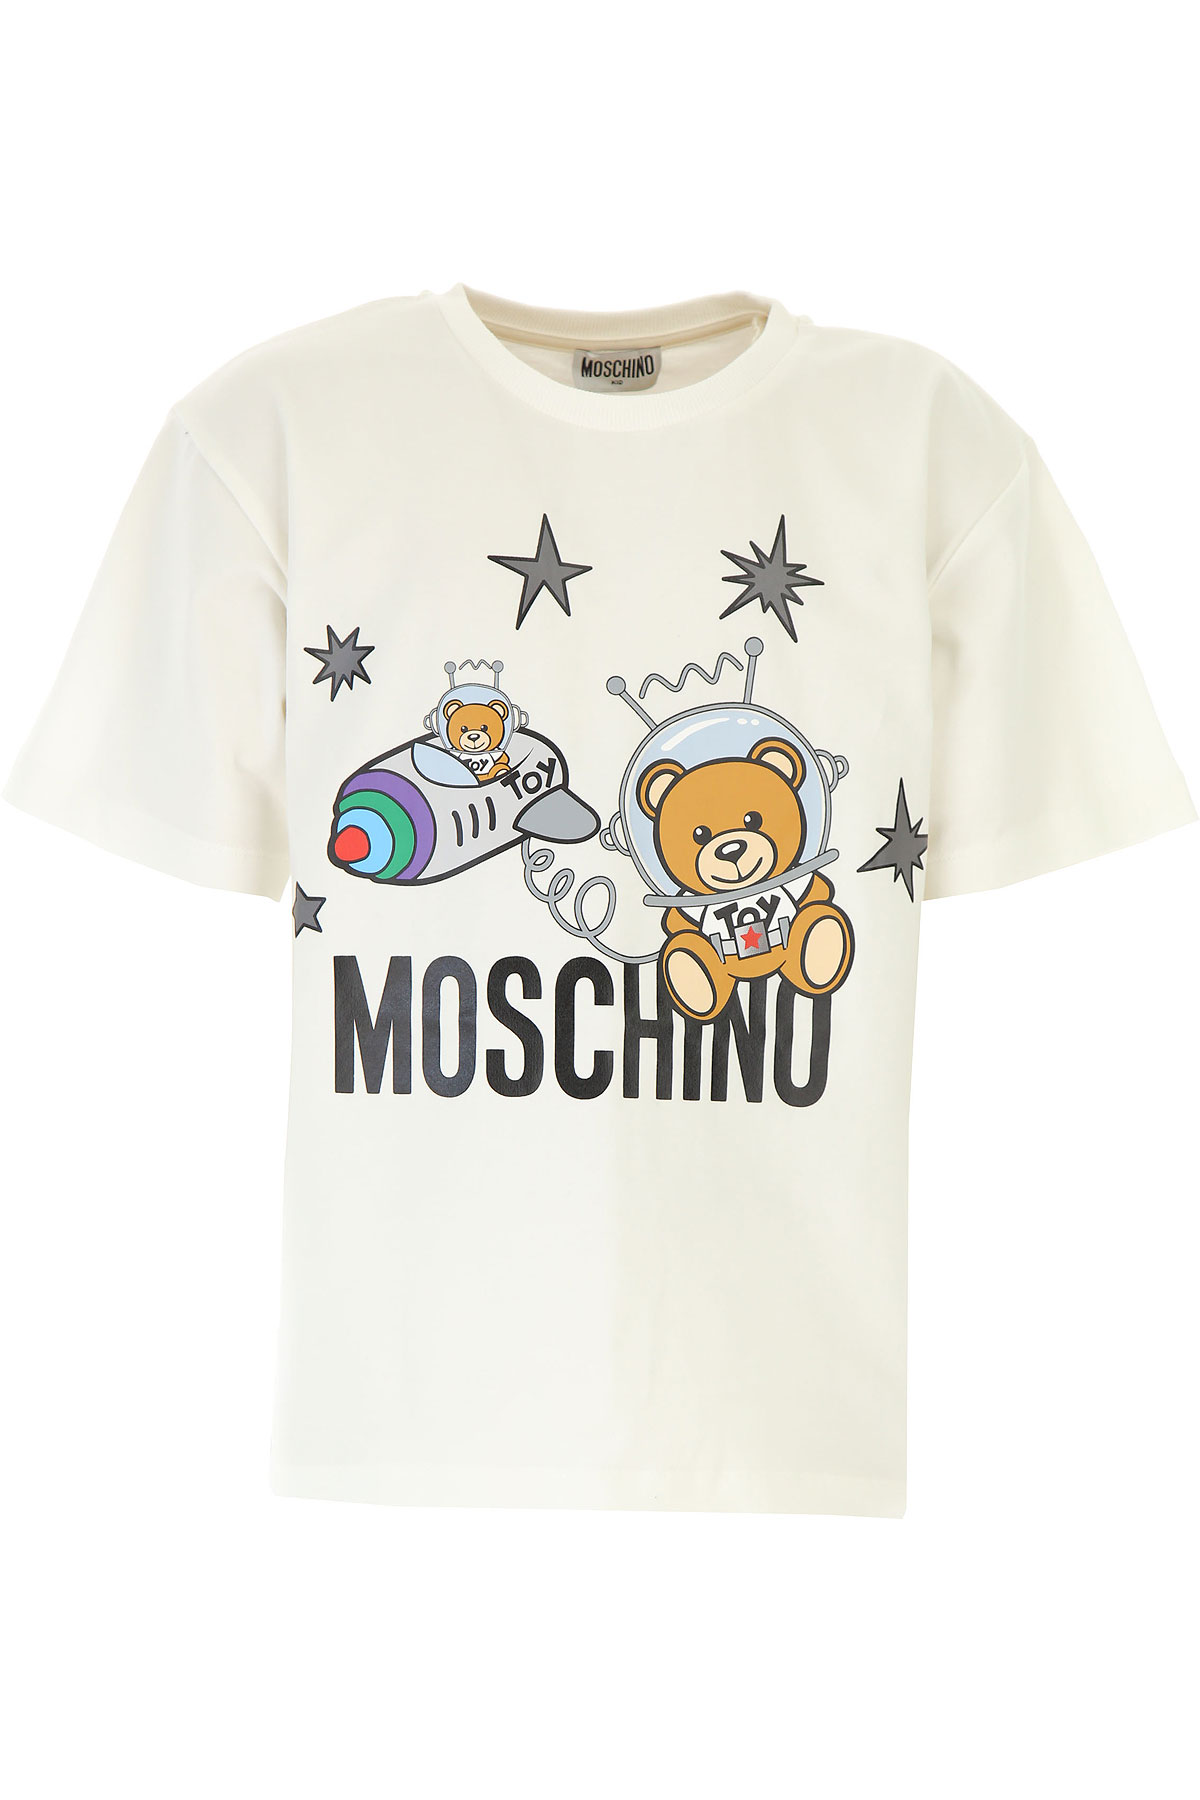 Moschino Kinder T-Shirt für Jungen Günstig im Sale, Weiss, Baumwolle, 2017, 6Y 8Y